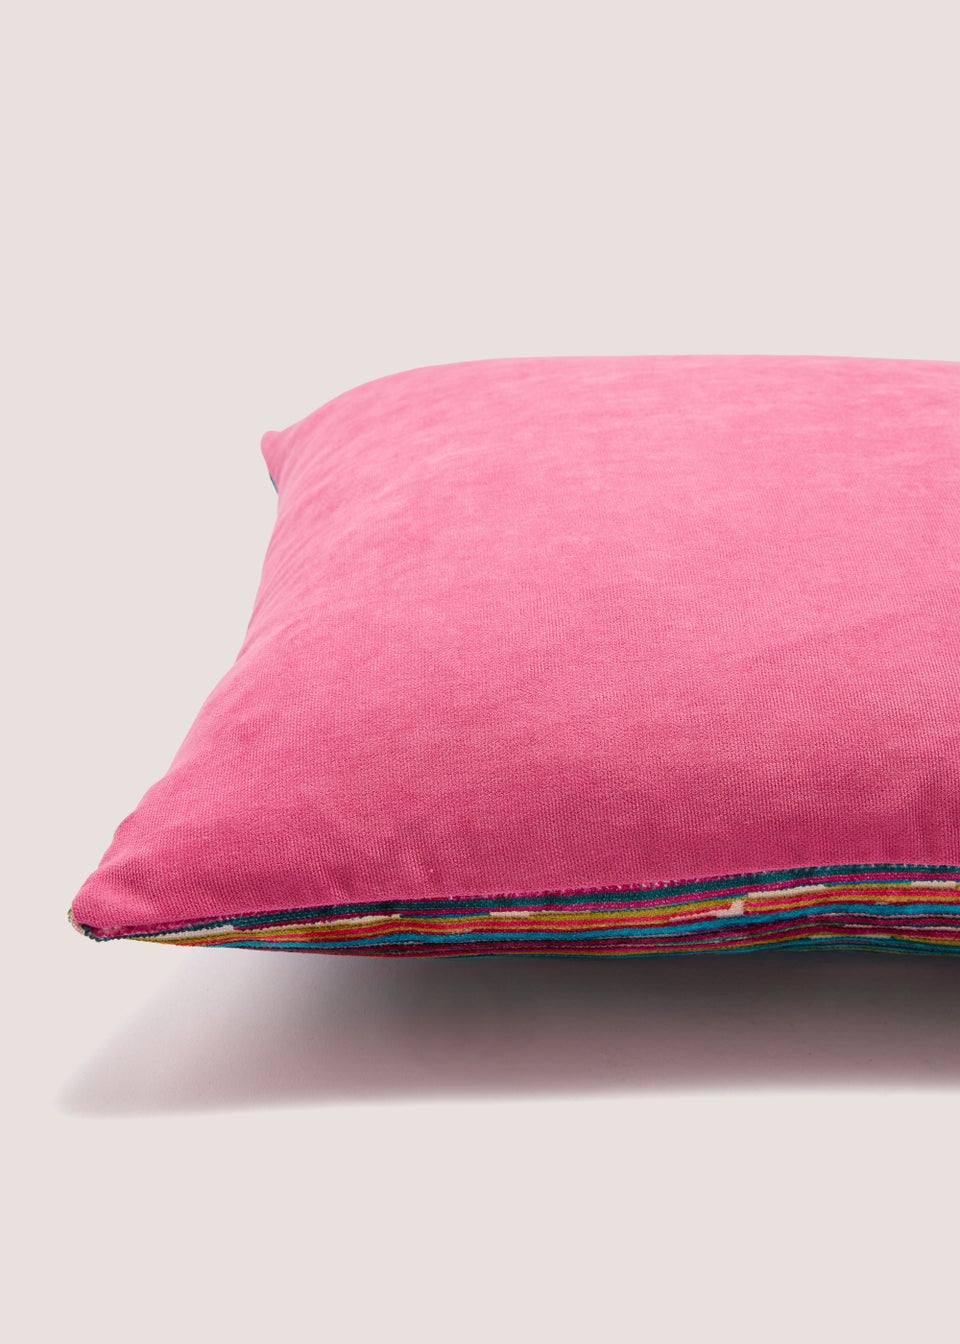 Pink Stripe Velvet Cushion (43cm x 43cm)